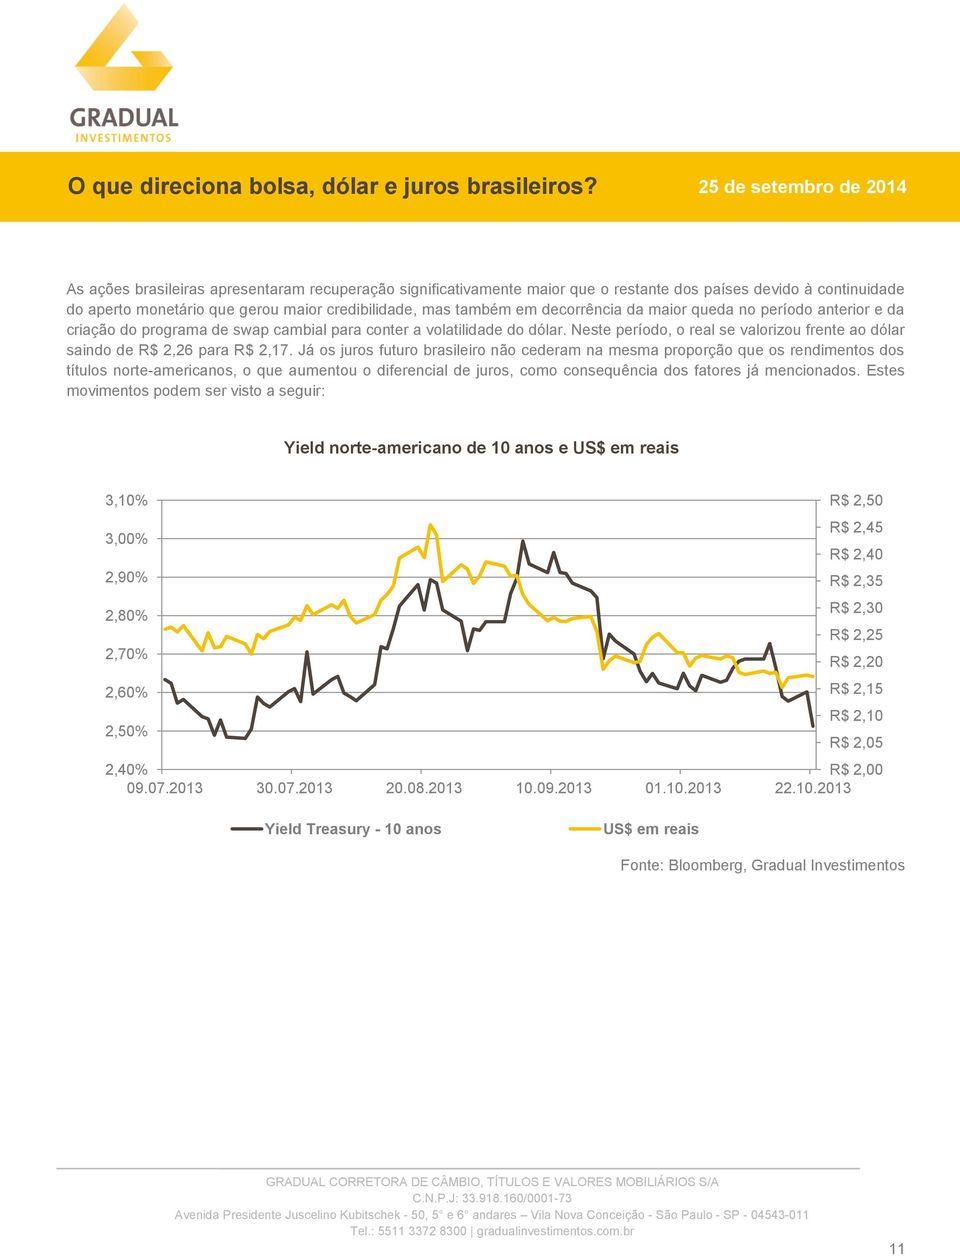 Já os juros futuro brasileiro não cederam na mesma proporção que os rendimentos dos títulos norte-americanos, o que aumentou o diferencial de juros, como consequência dos fatores já mencionados.